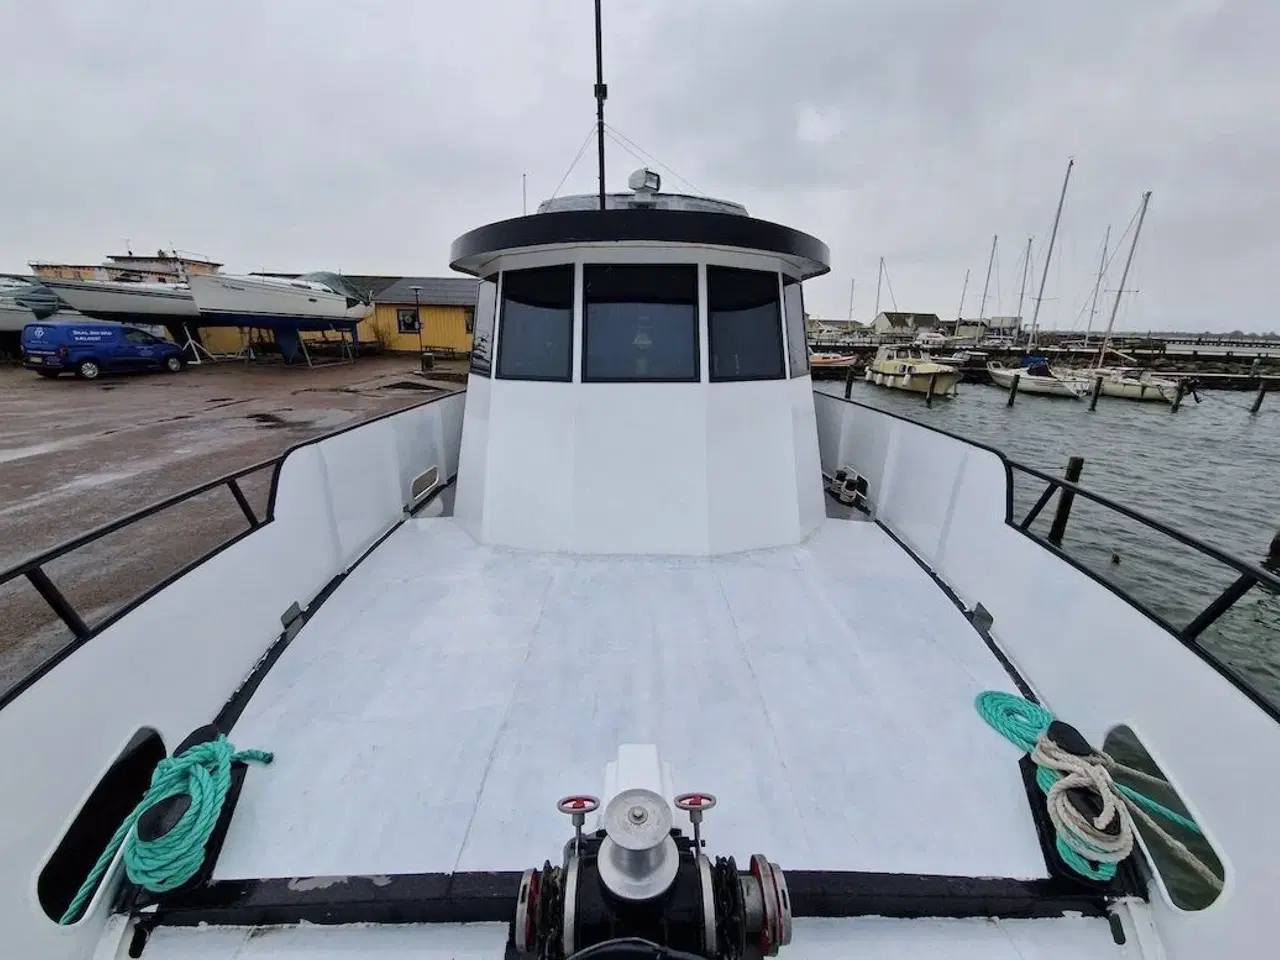 Billede 35 - Nautica S - Totalrenoveret beboelsesbåd/ husbåd - Søsat i 2020 - Klar til sejlads/beboelse